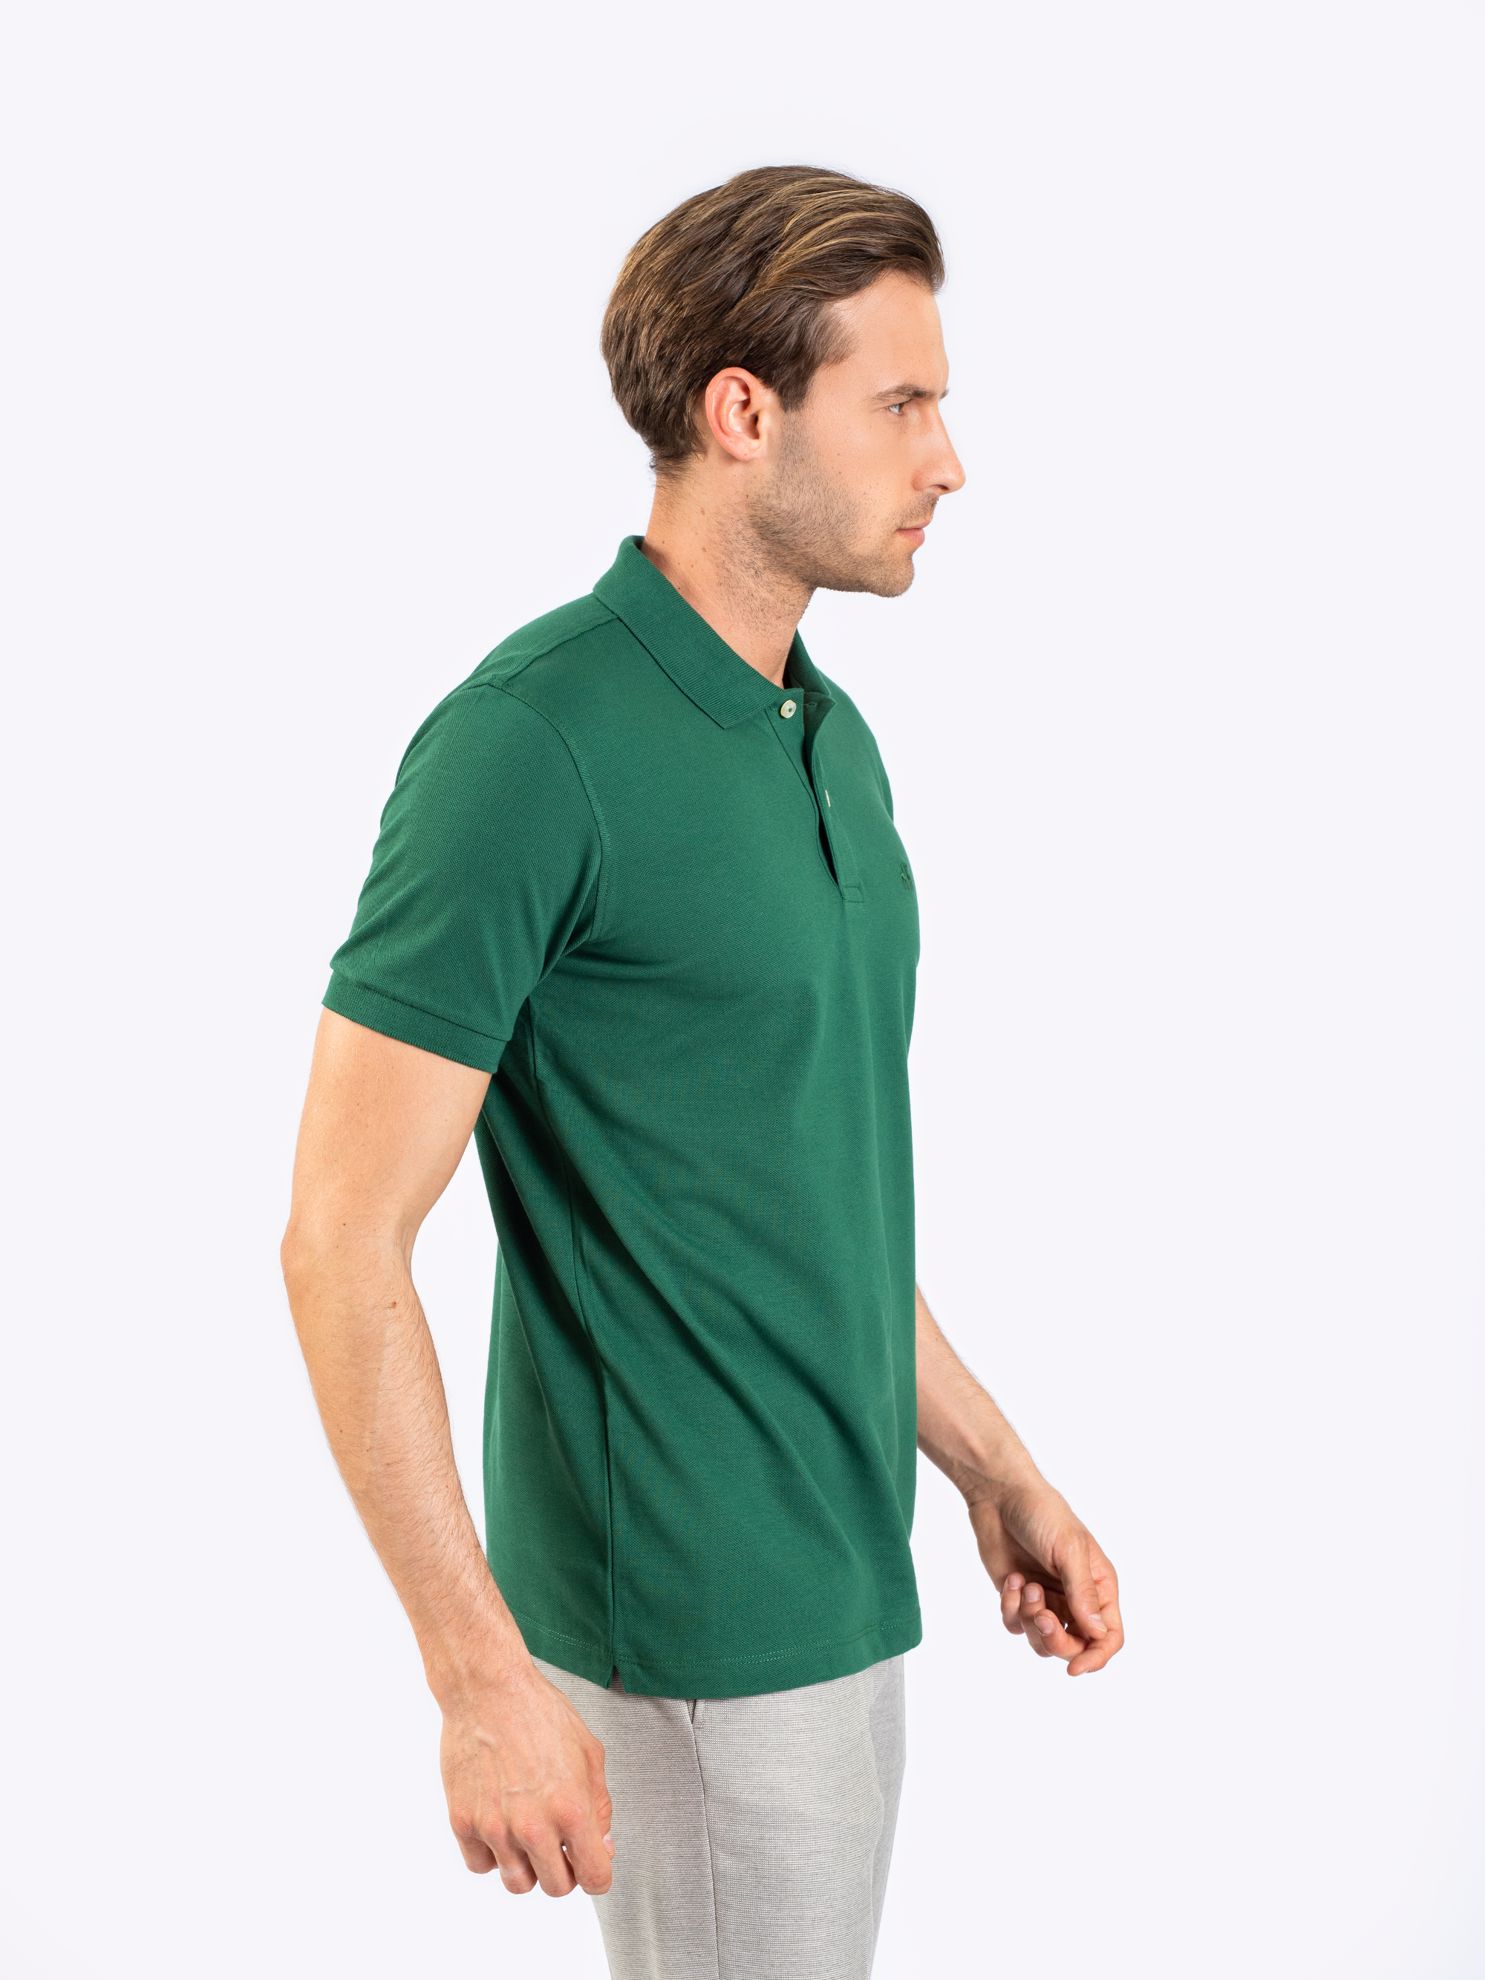 Karaca Erkek Slim Fit Polo Yaka Tişört-Çimen Yeşili. ürün görseli